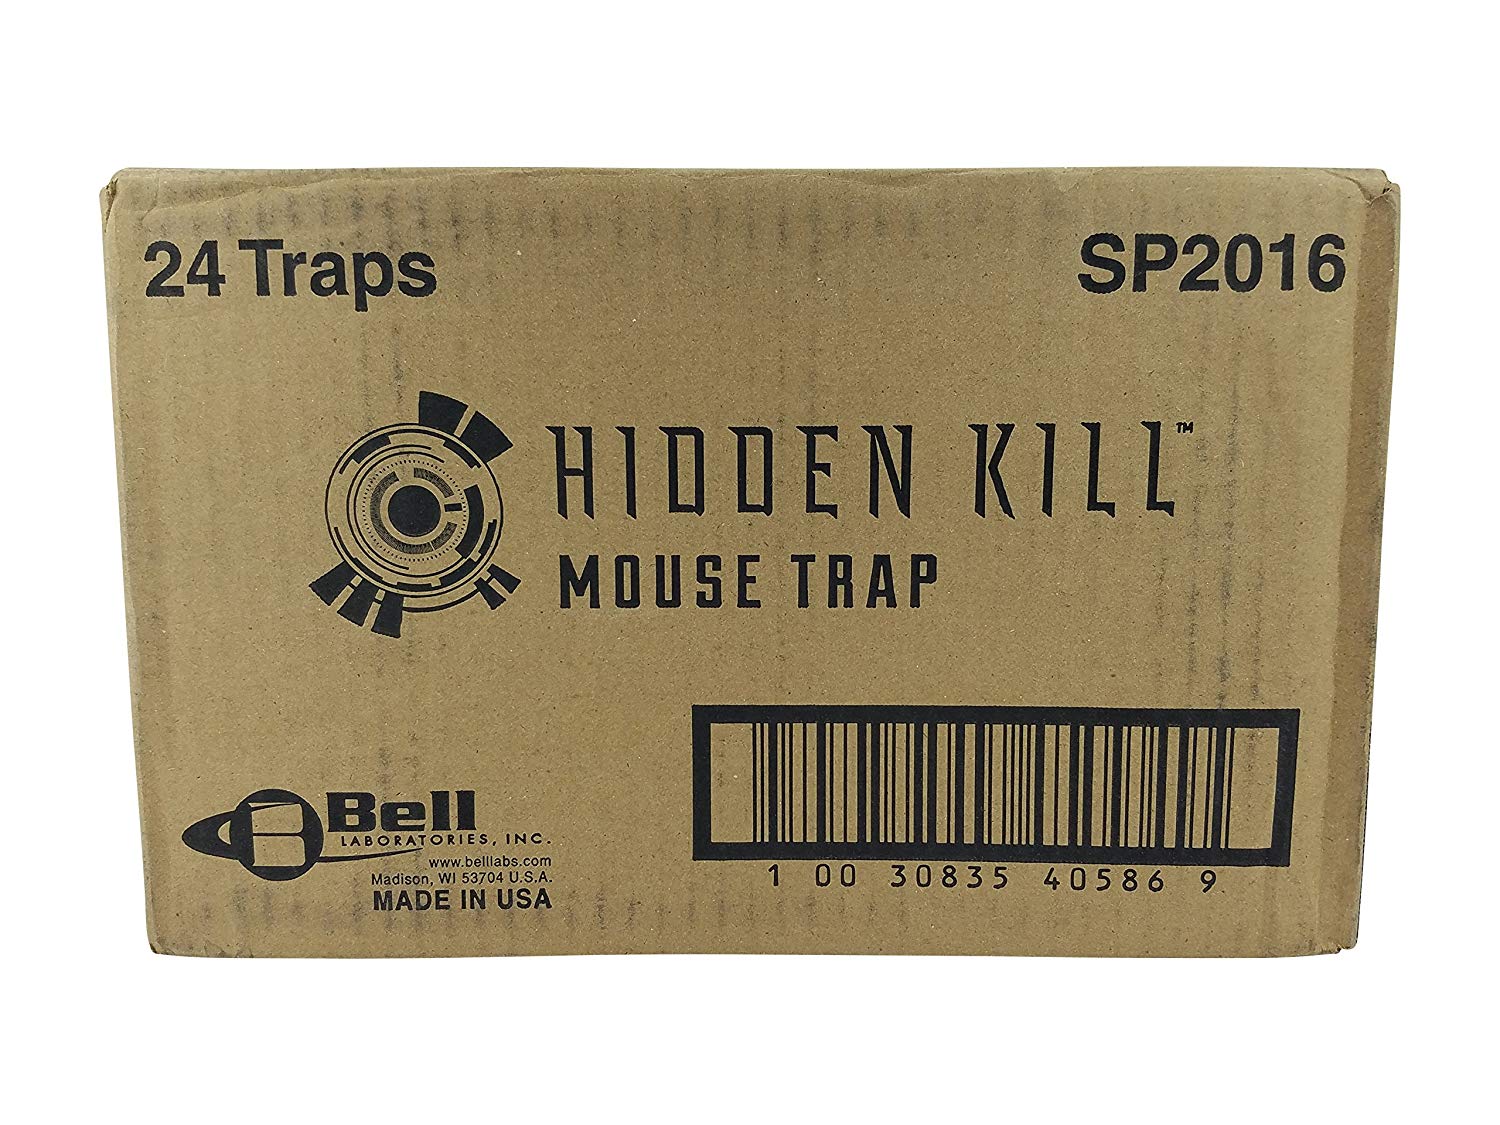 Mini T-Rex Mouse Snap Traps - Case (24 Traps)